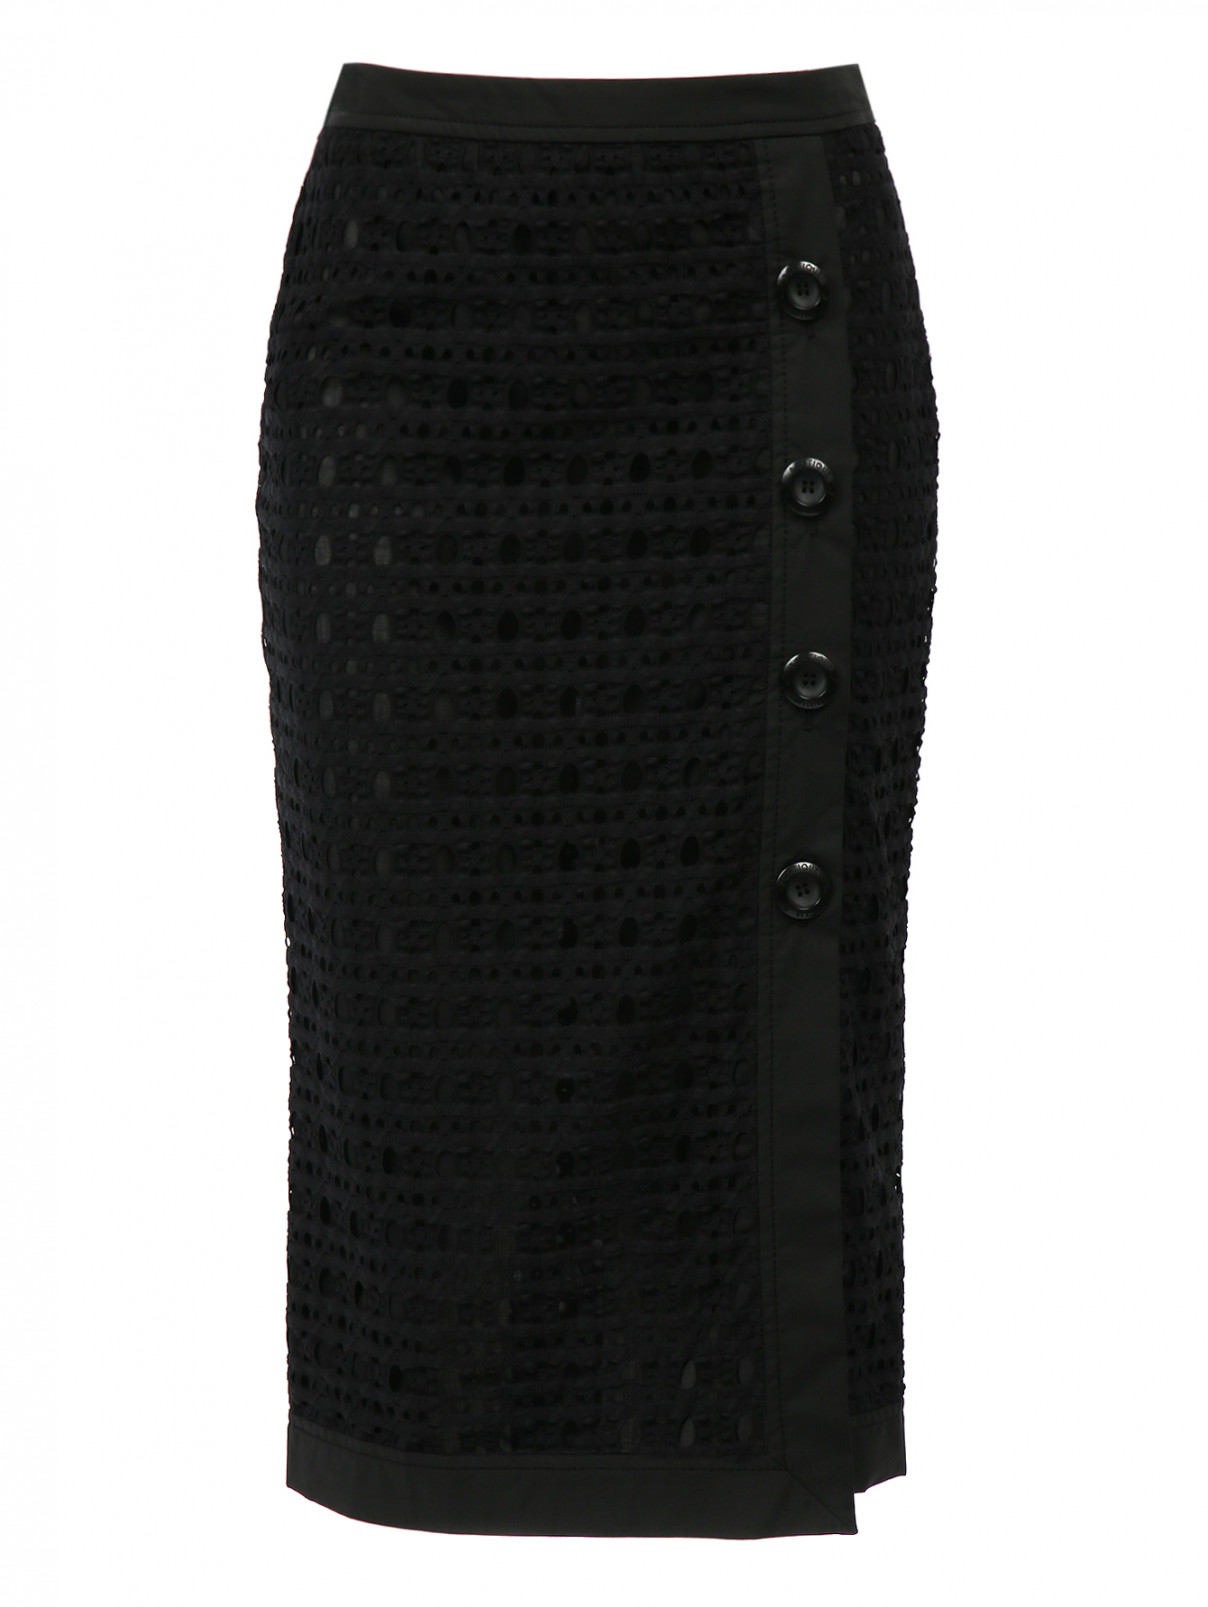 Юбка - карандаш из перфорированной ткани  декорированная пуговицами Moschino Boutique  –  Общий вид  – Цвет:  Черный